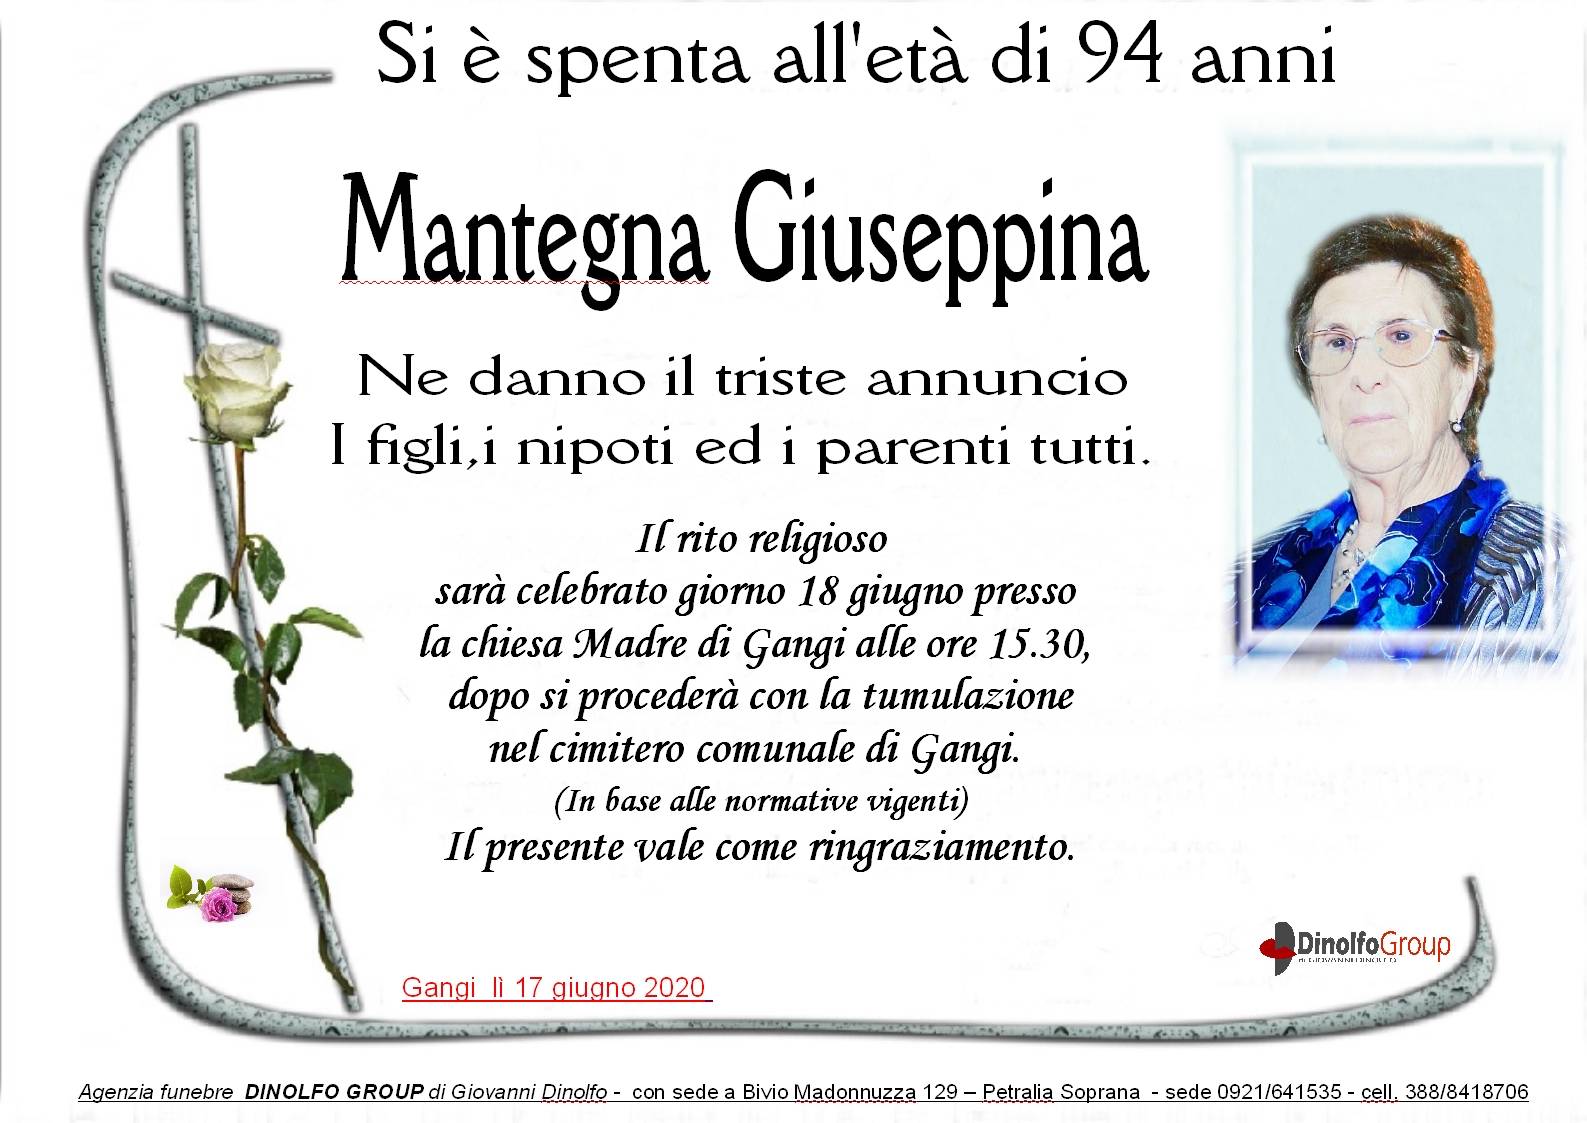 Giuseppina Mantegna